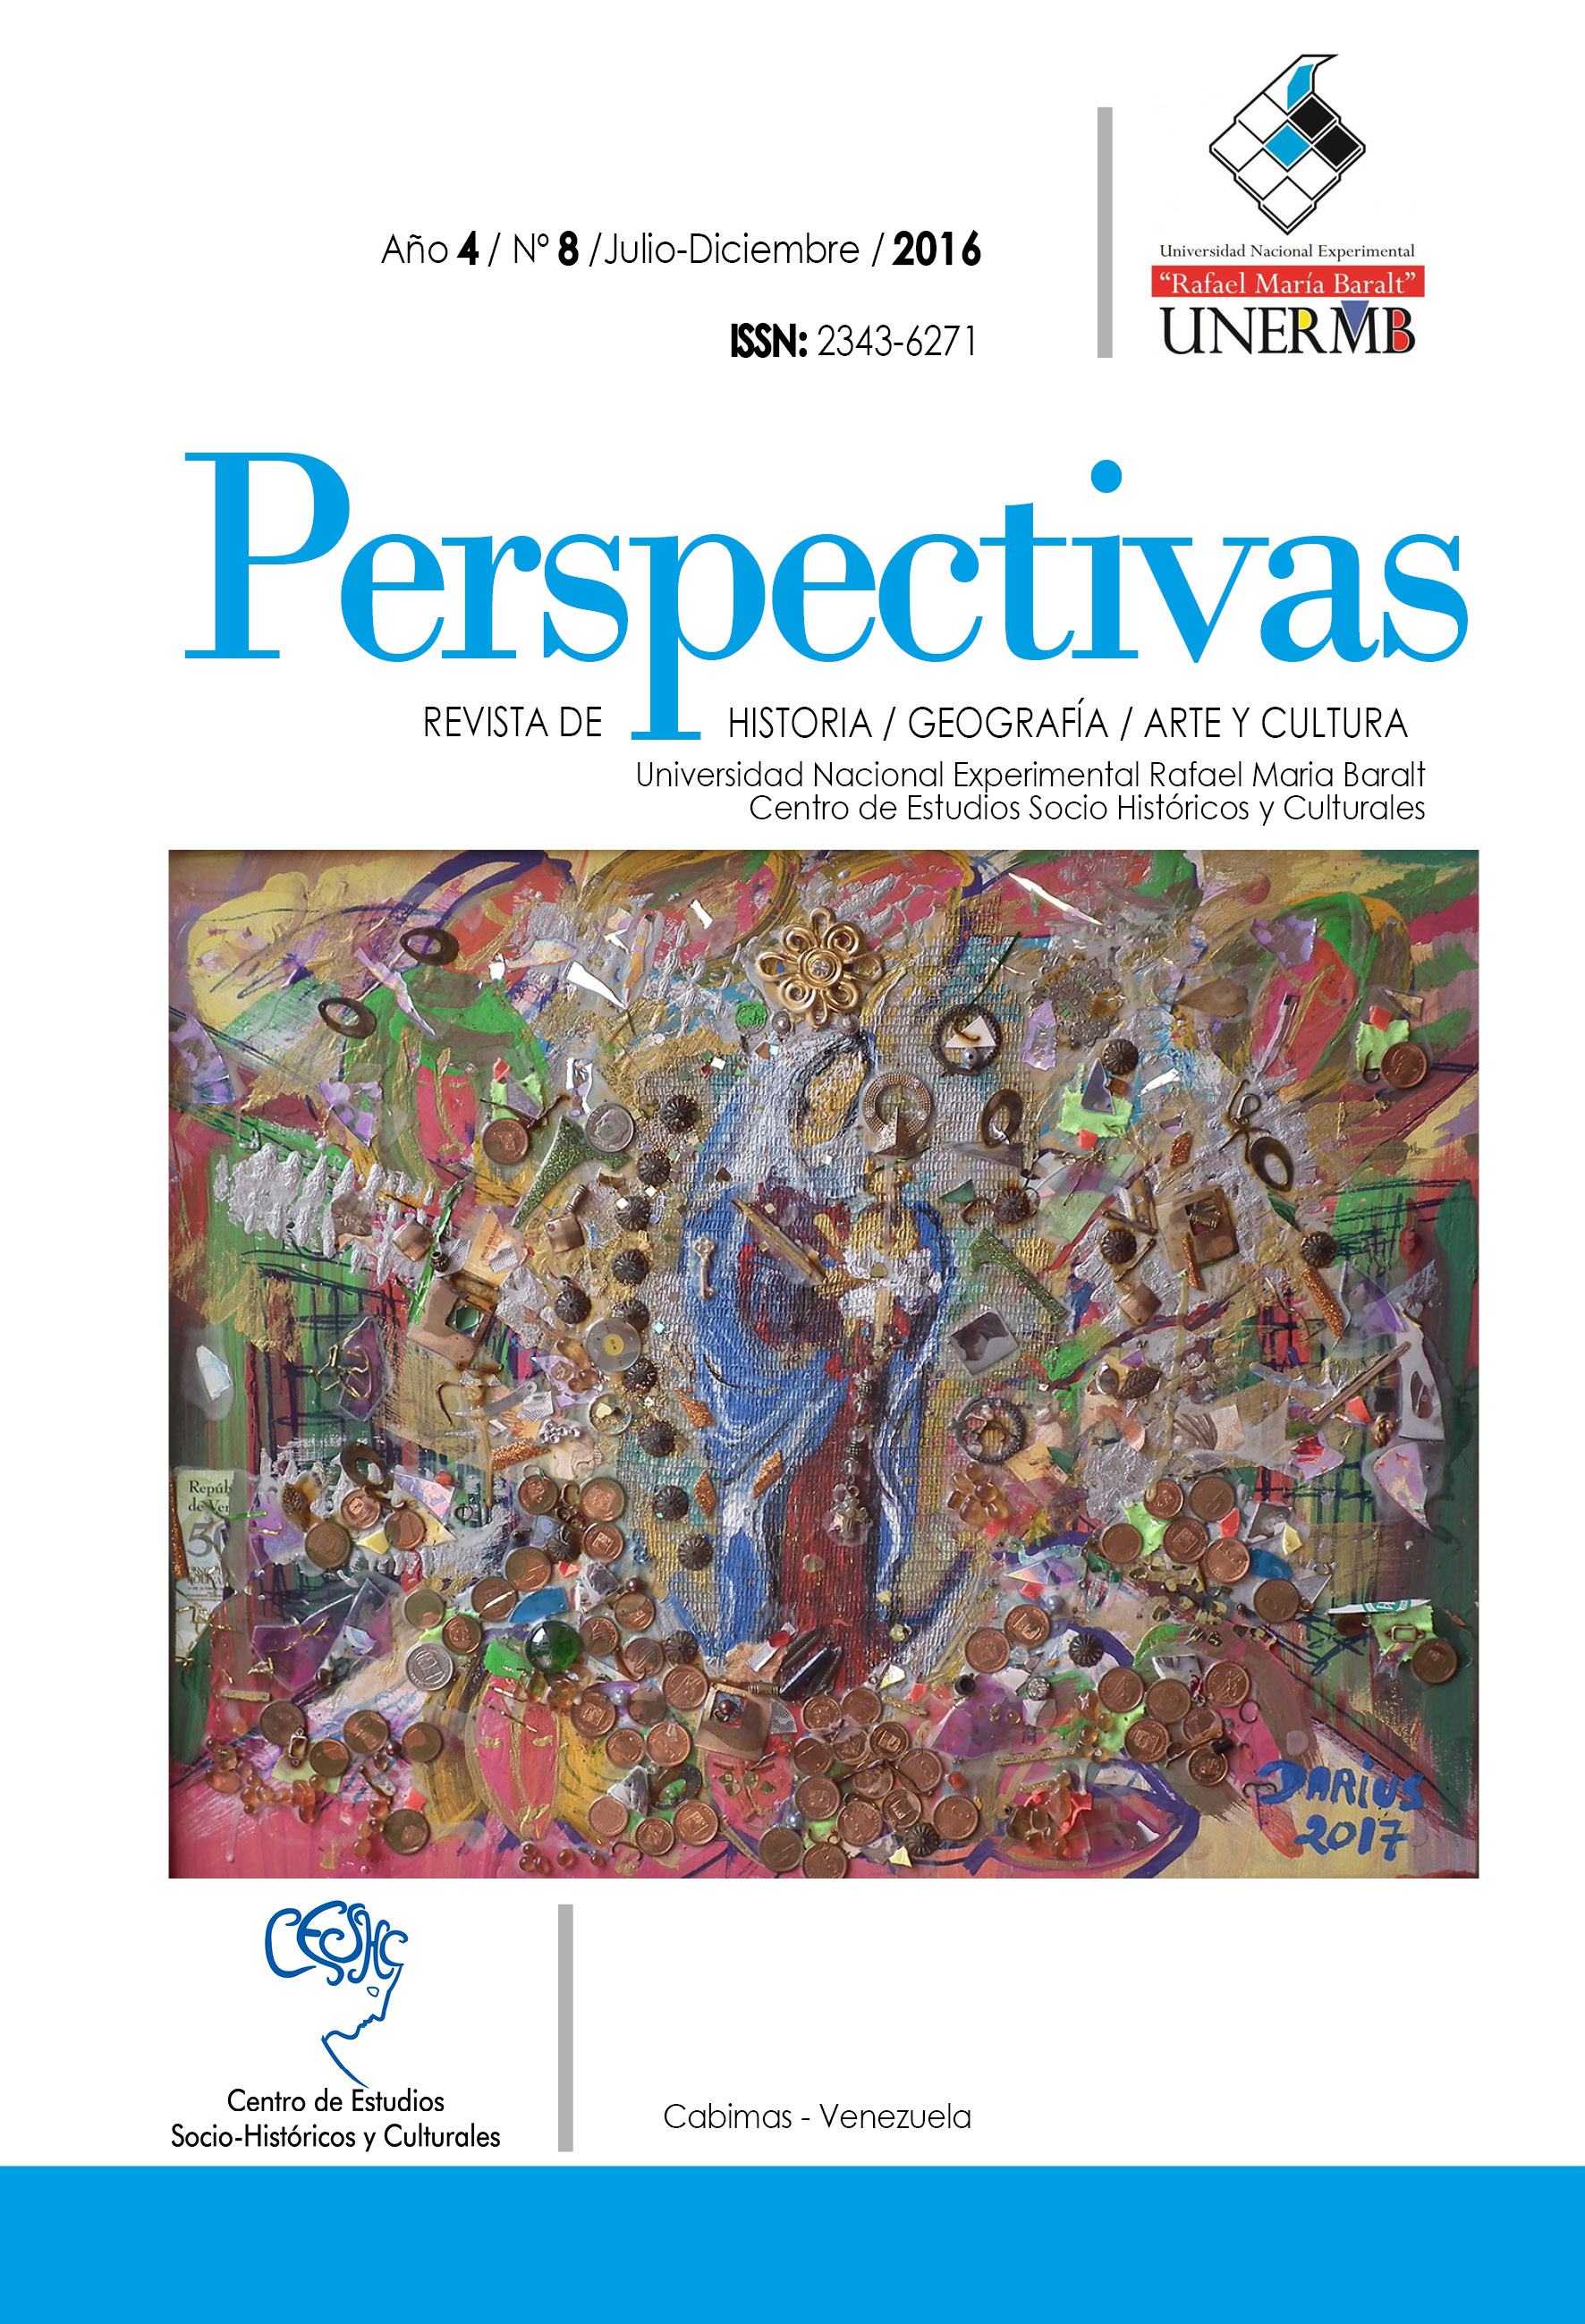 					Ver Vol. 4 Núm. 8 (2016): Perspectivas, Revista de Historia, Geografía, Arte y Cultura de la UNERMB
				